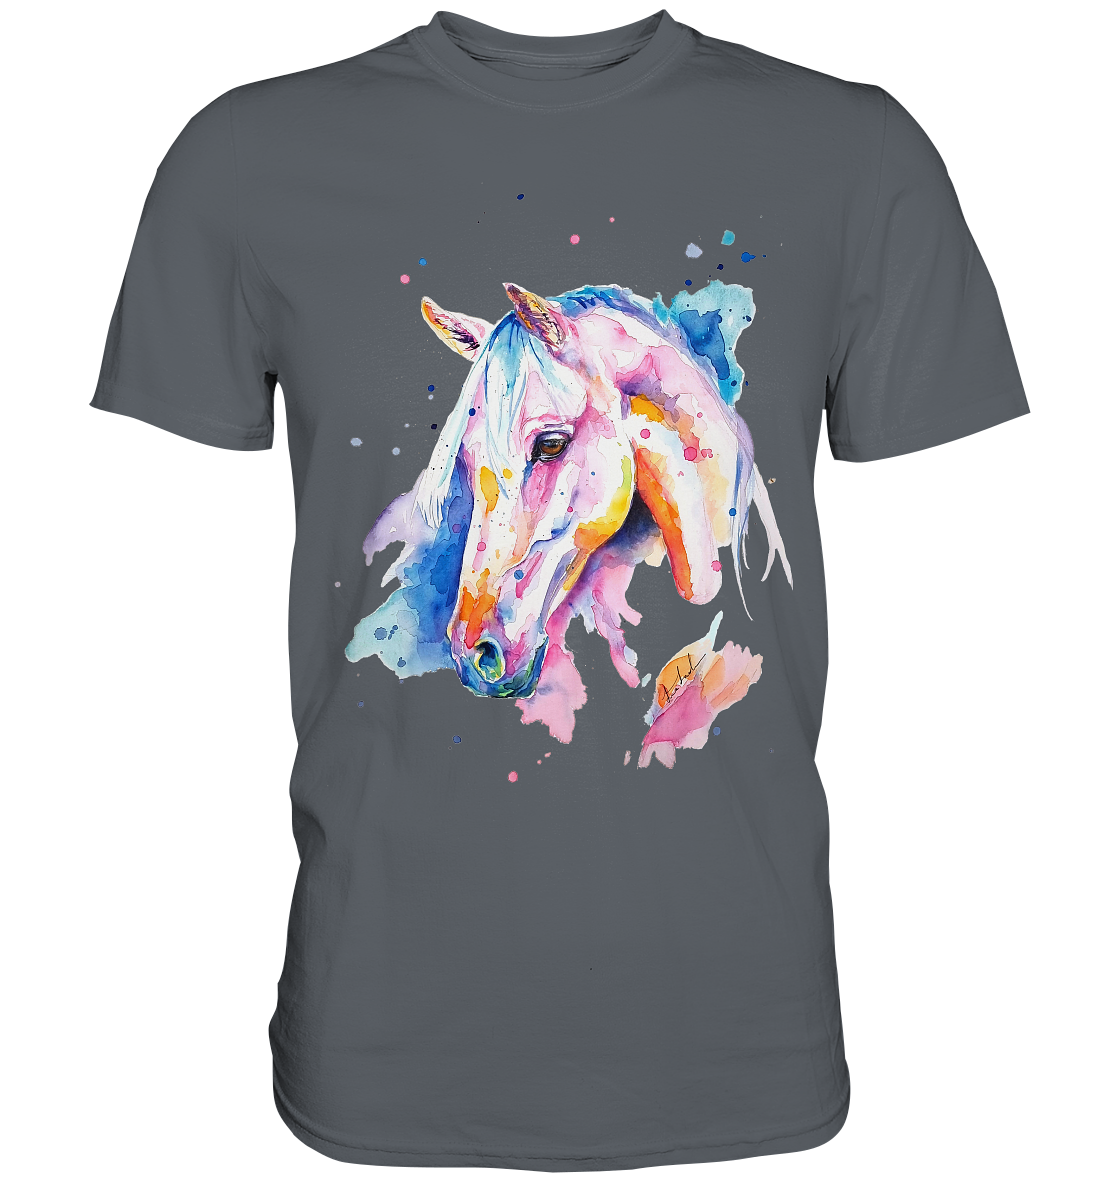 Buntes Pferd - Classic Shirt